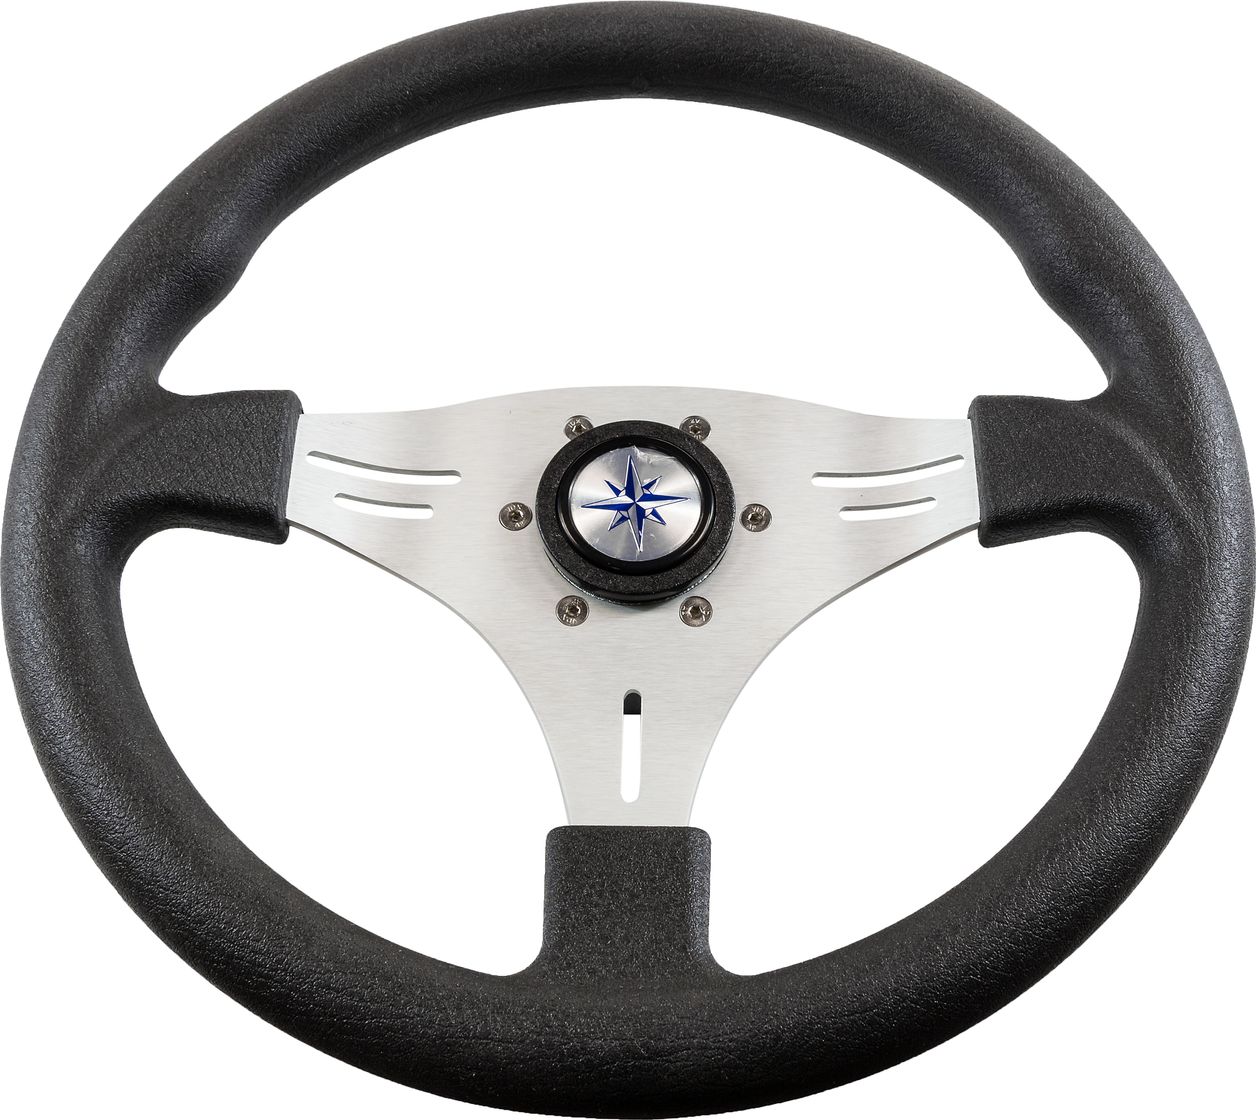 Рулевое колесо MANTA обод черный, спицы серебряные д. 355 мм VN70551-01 рулевое колесо orion обод черносеребристый спицы серебряные д 355 мм vn960101 93